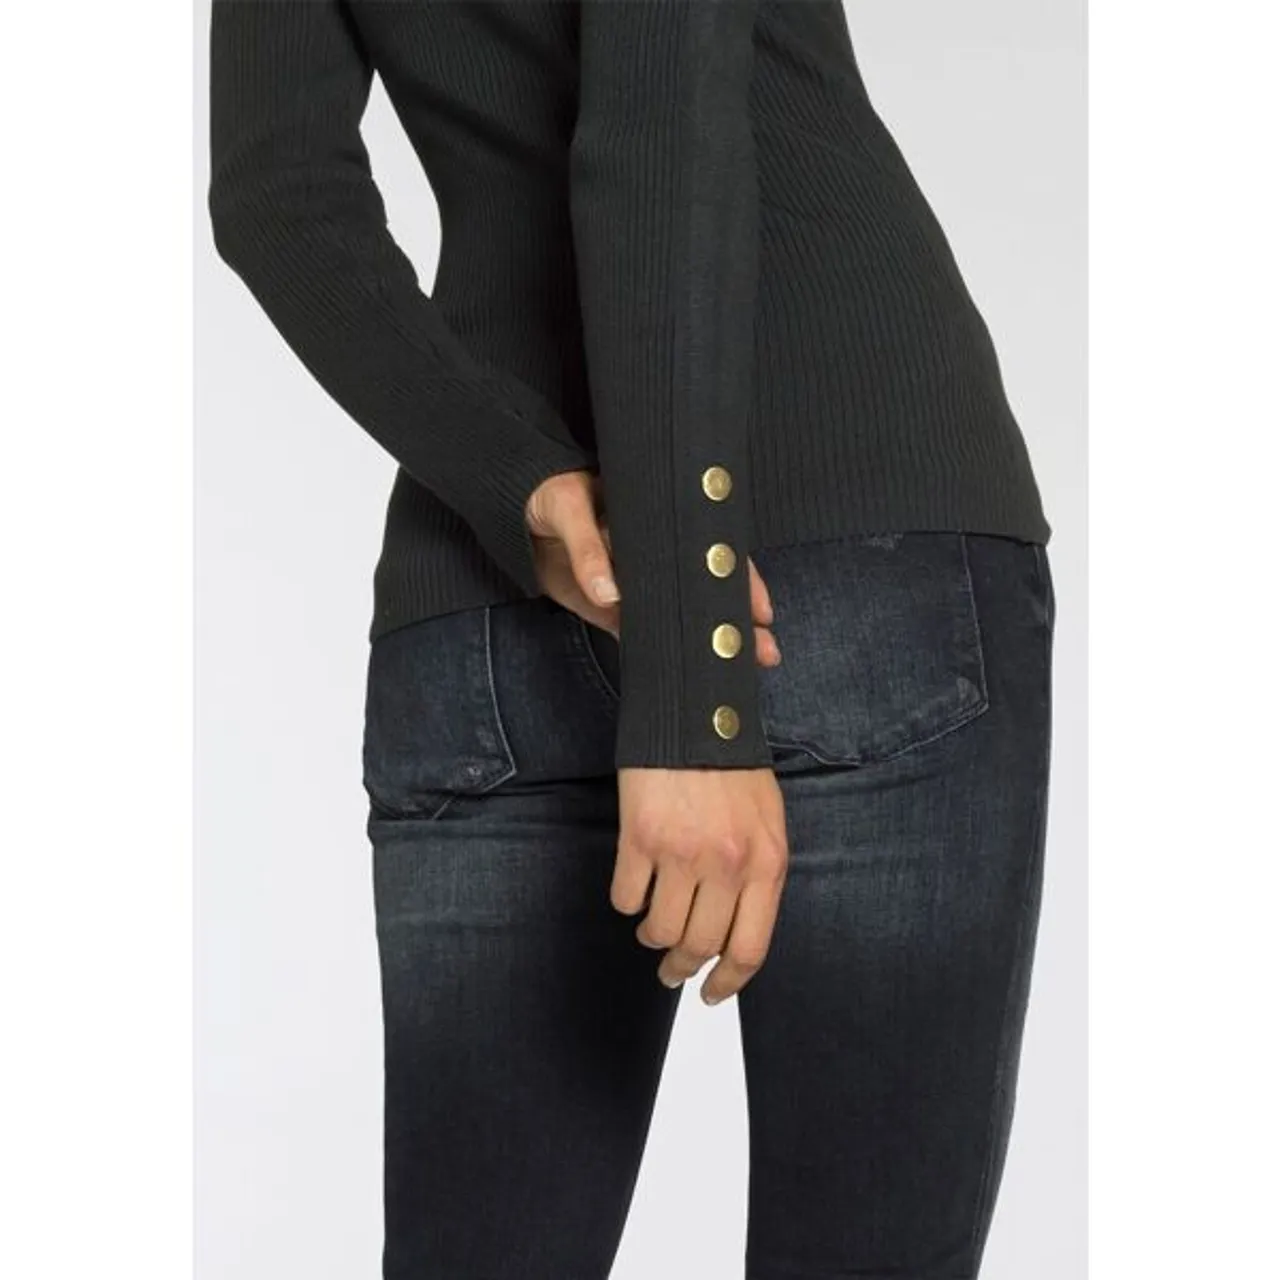 Strickpullover MELROSE Gr. 36, schwarz Damen Pullover Feinstrickpullover aus Rippqualität mit Knöpfen